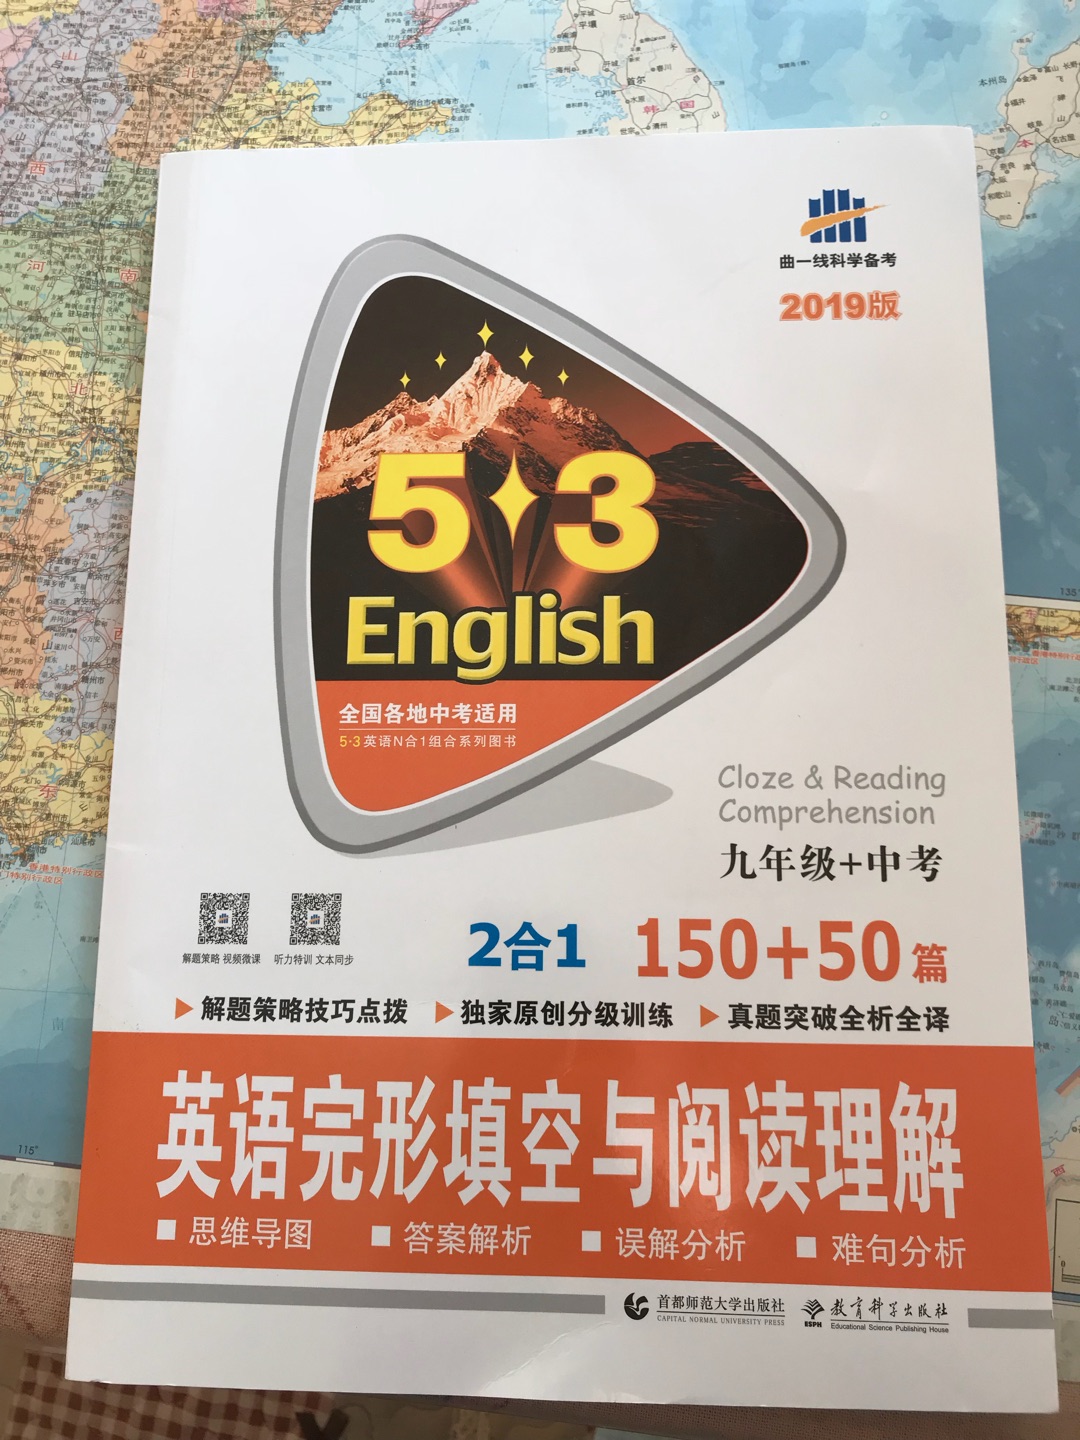 现在的英语学习真是拔苗助长，希望对孩子有帮助吧。